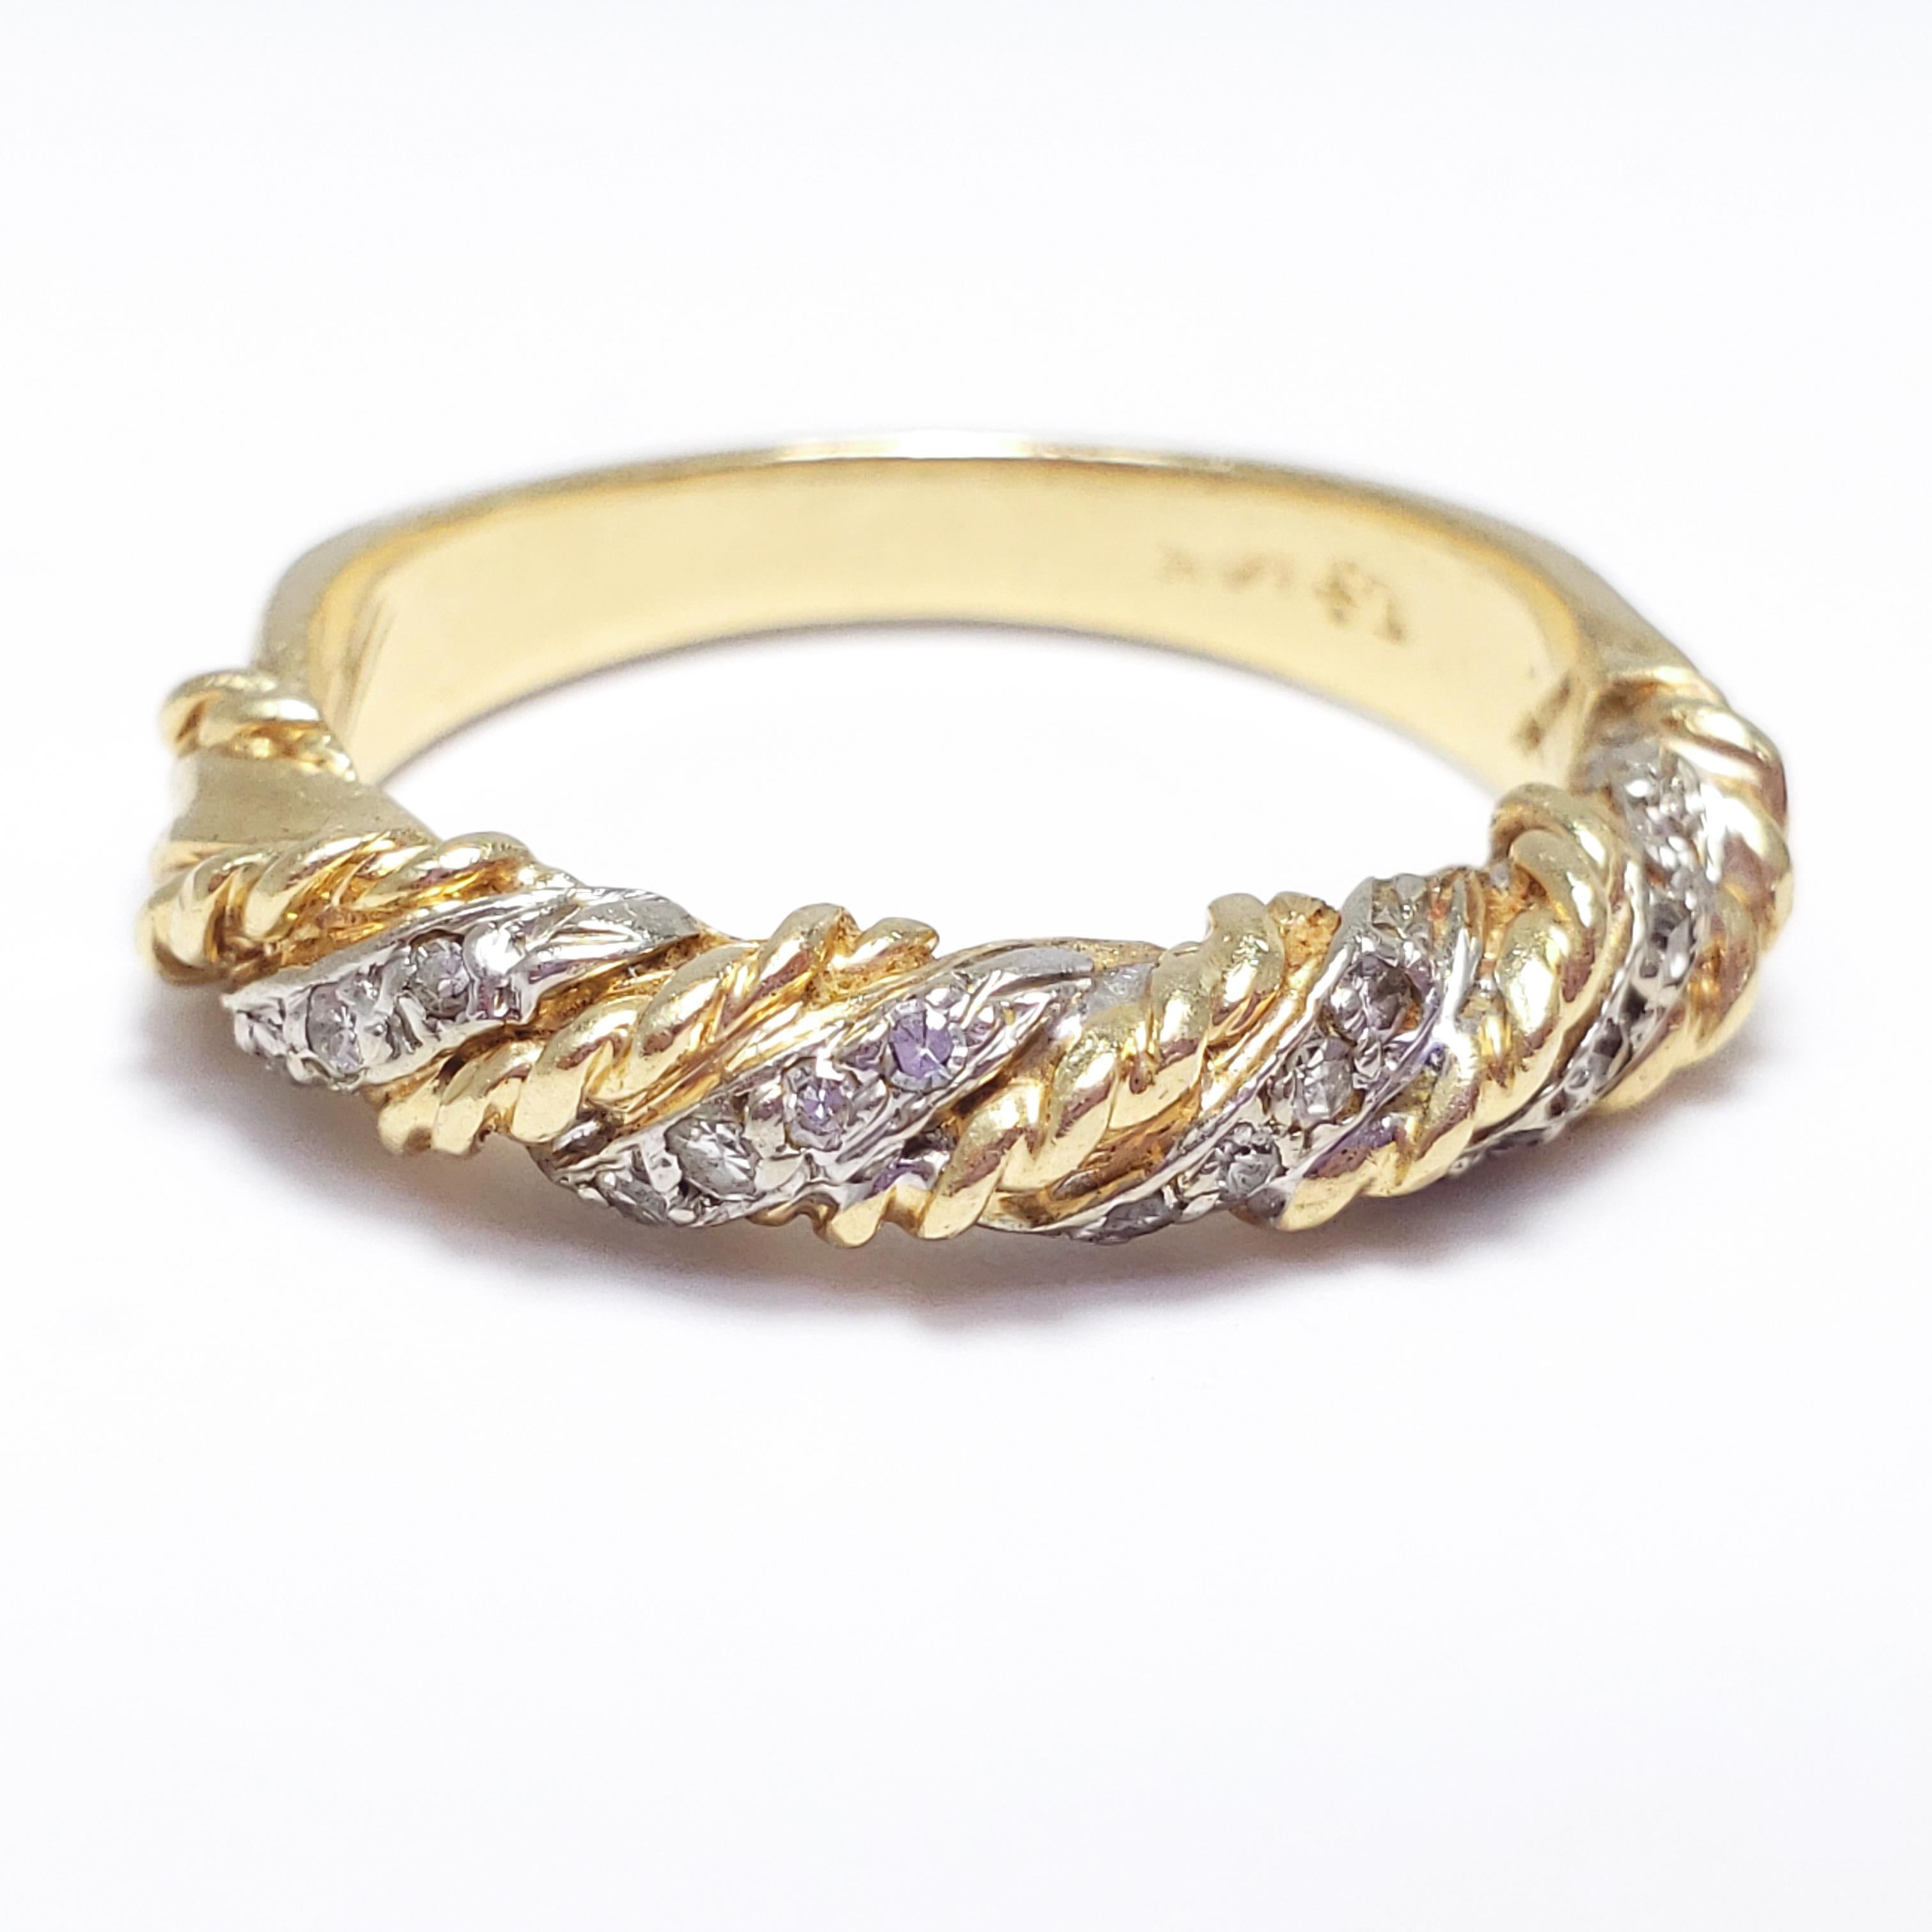 Ein ausgefallener Ring mit einer Verflechtung von 14K Gold und Platin auf der Vorderseite. Jede der 4 Platinreihen ist mit 4 Diamanten von 0,01 Karat besetzt, so dass sich insgesamt 16 Diamanten von 0,16 Karat ergeben. 14K und 